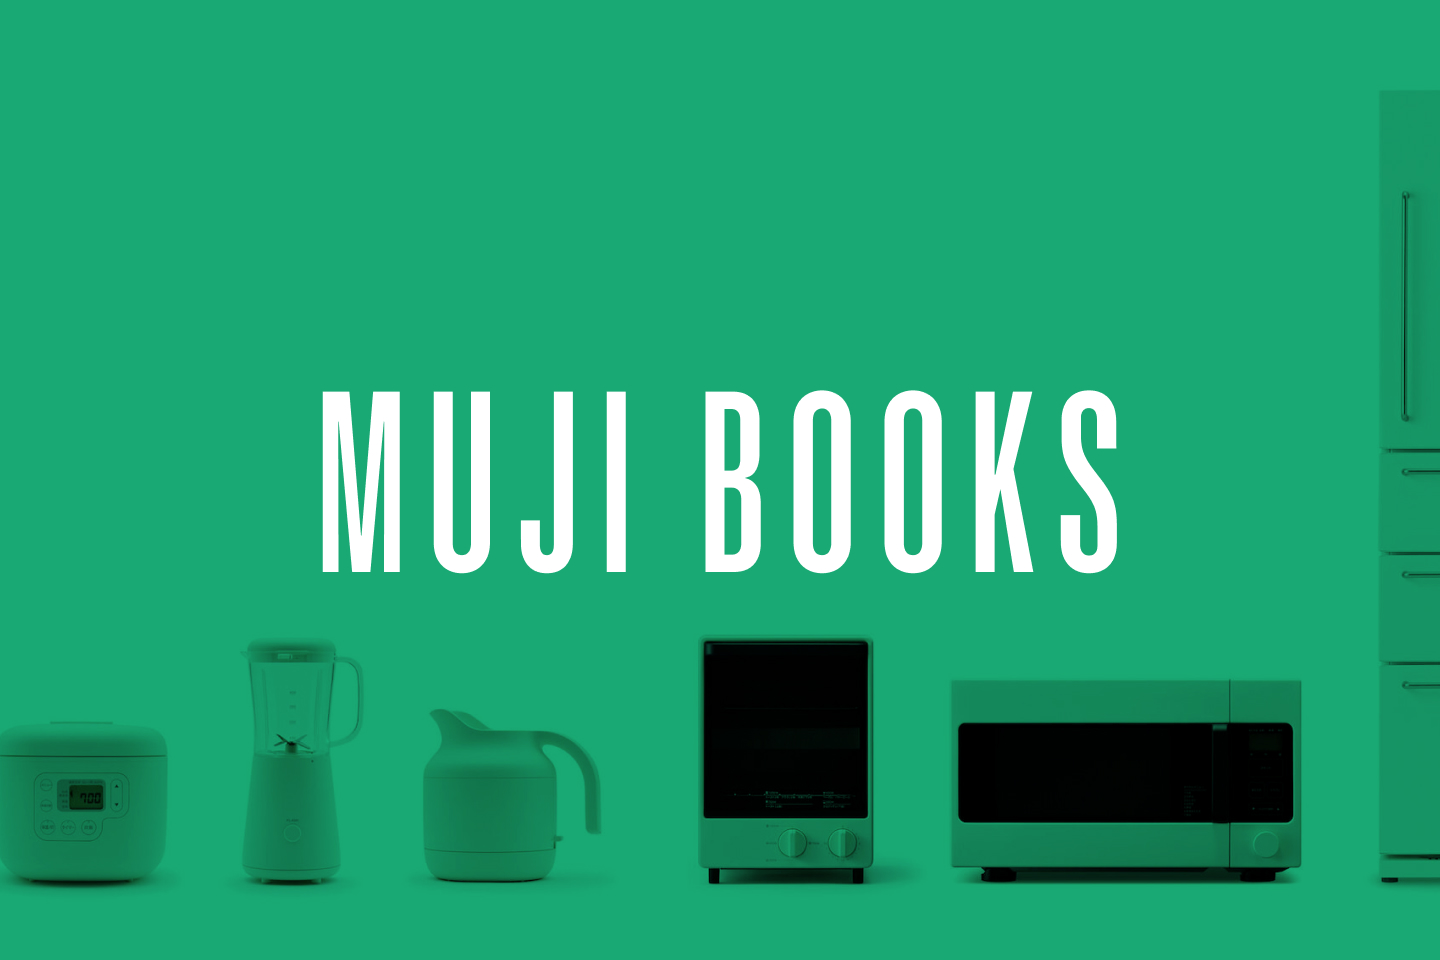 Three books about Muji